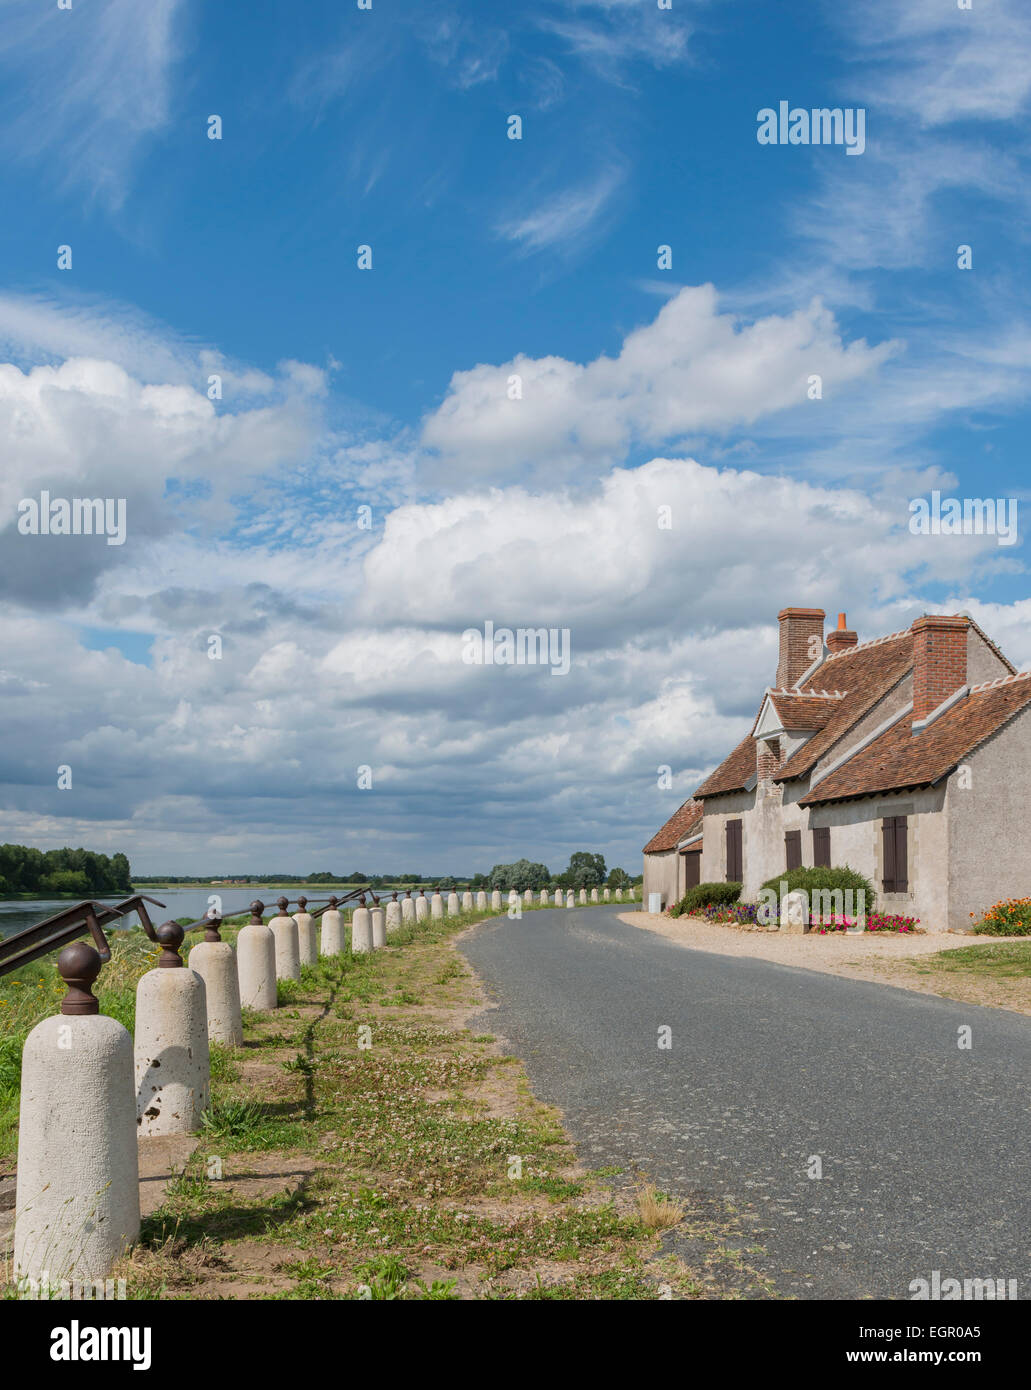 Dyke, route et maisons près de la Loire en France. Beatifull ciel bleu avec des nuages. Banque D'Images